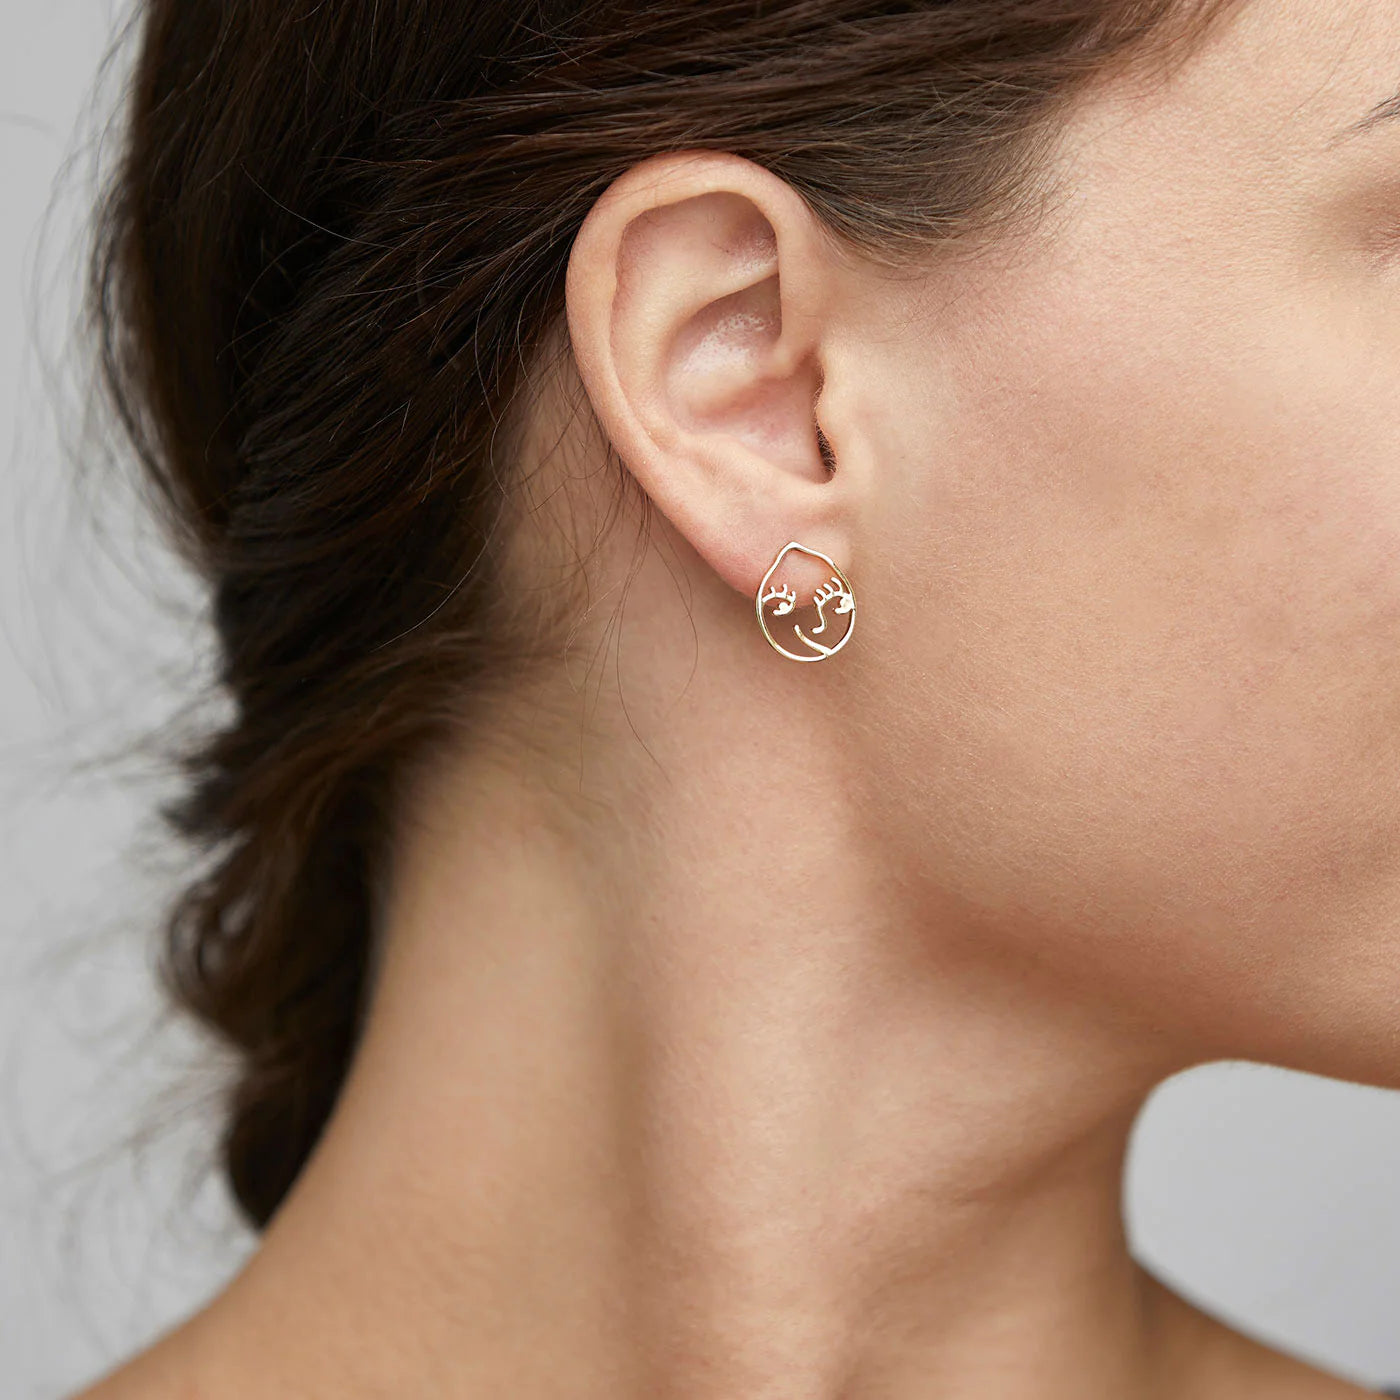 DEBRA earrings gold-plated